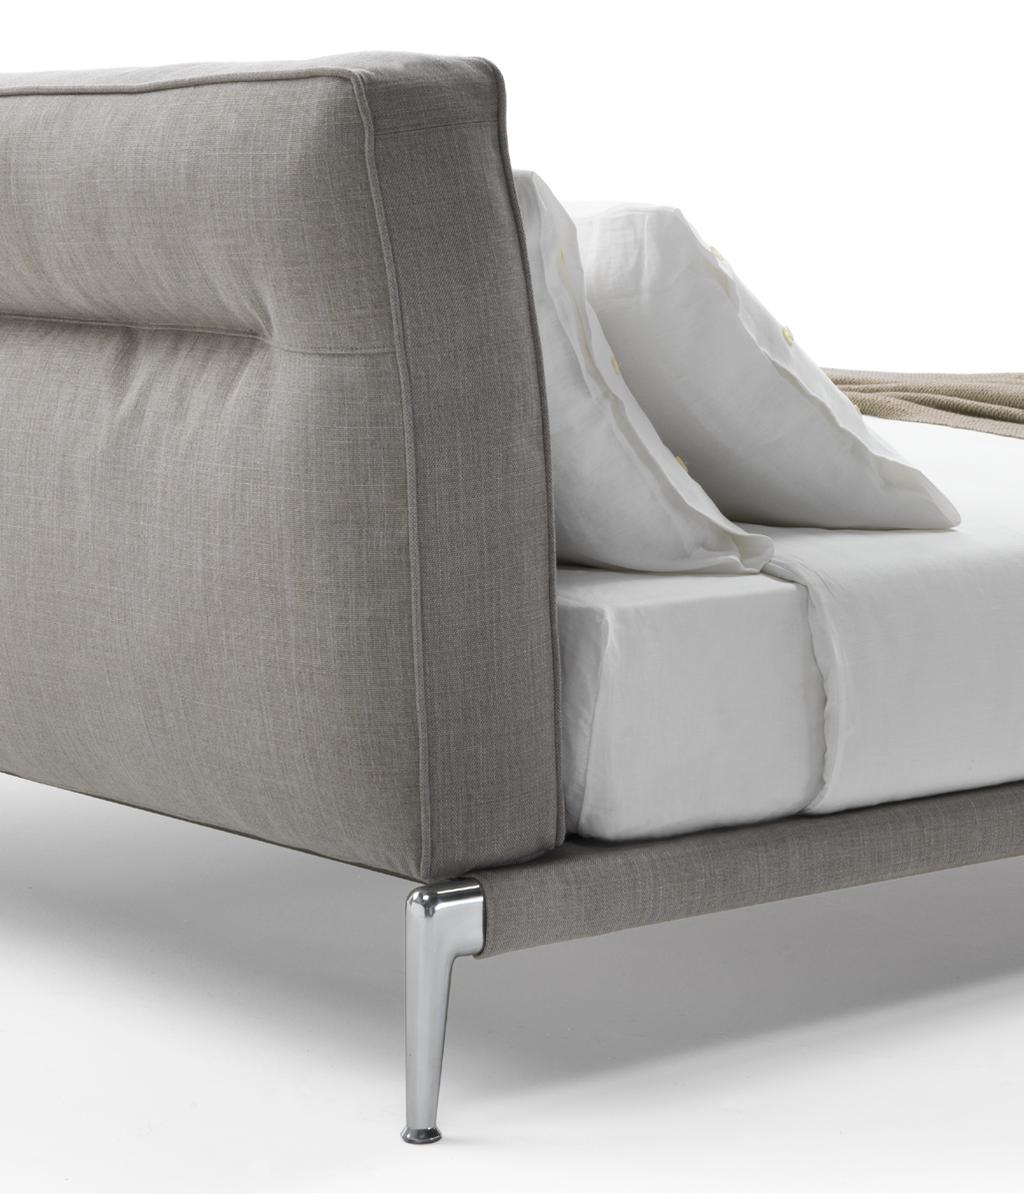 Adda Antonio Citterio Design Letti Beds L estetica asciutta e contemporanea che caratterizza il divano Adda presentato al Salone del Mobile nell aprile 2017 si declina ora nell omonimo letto.